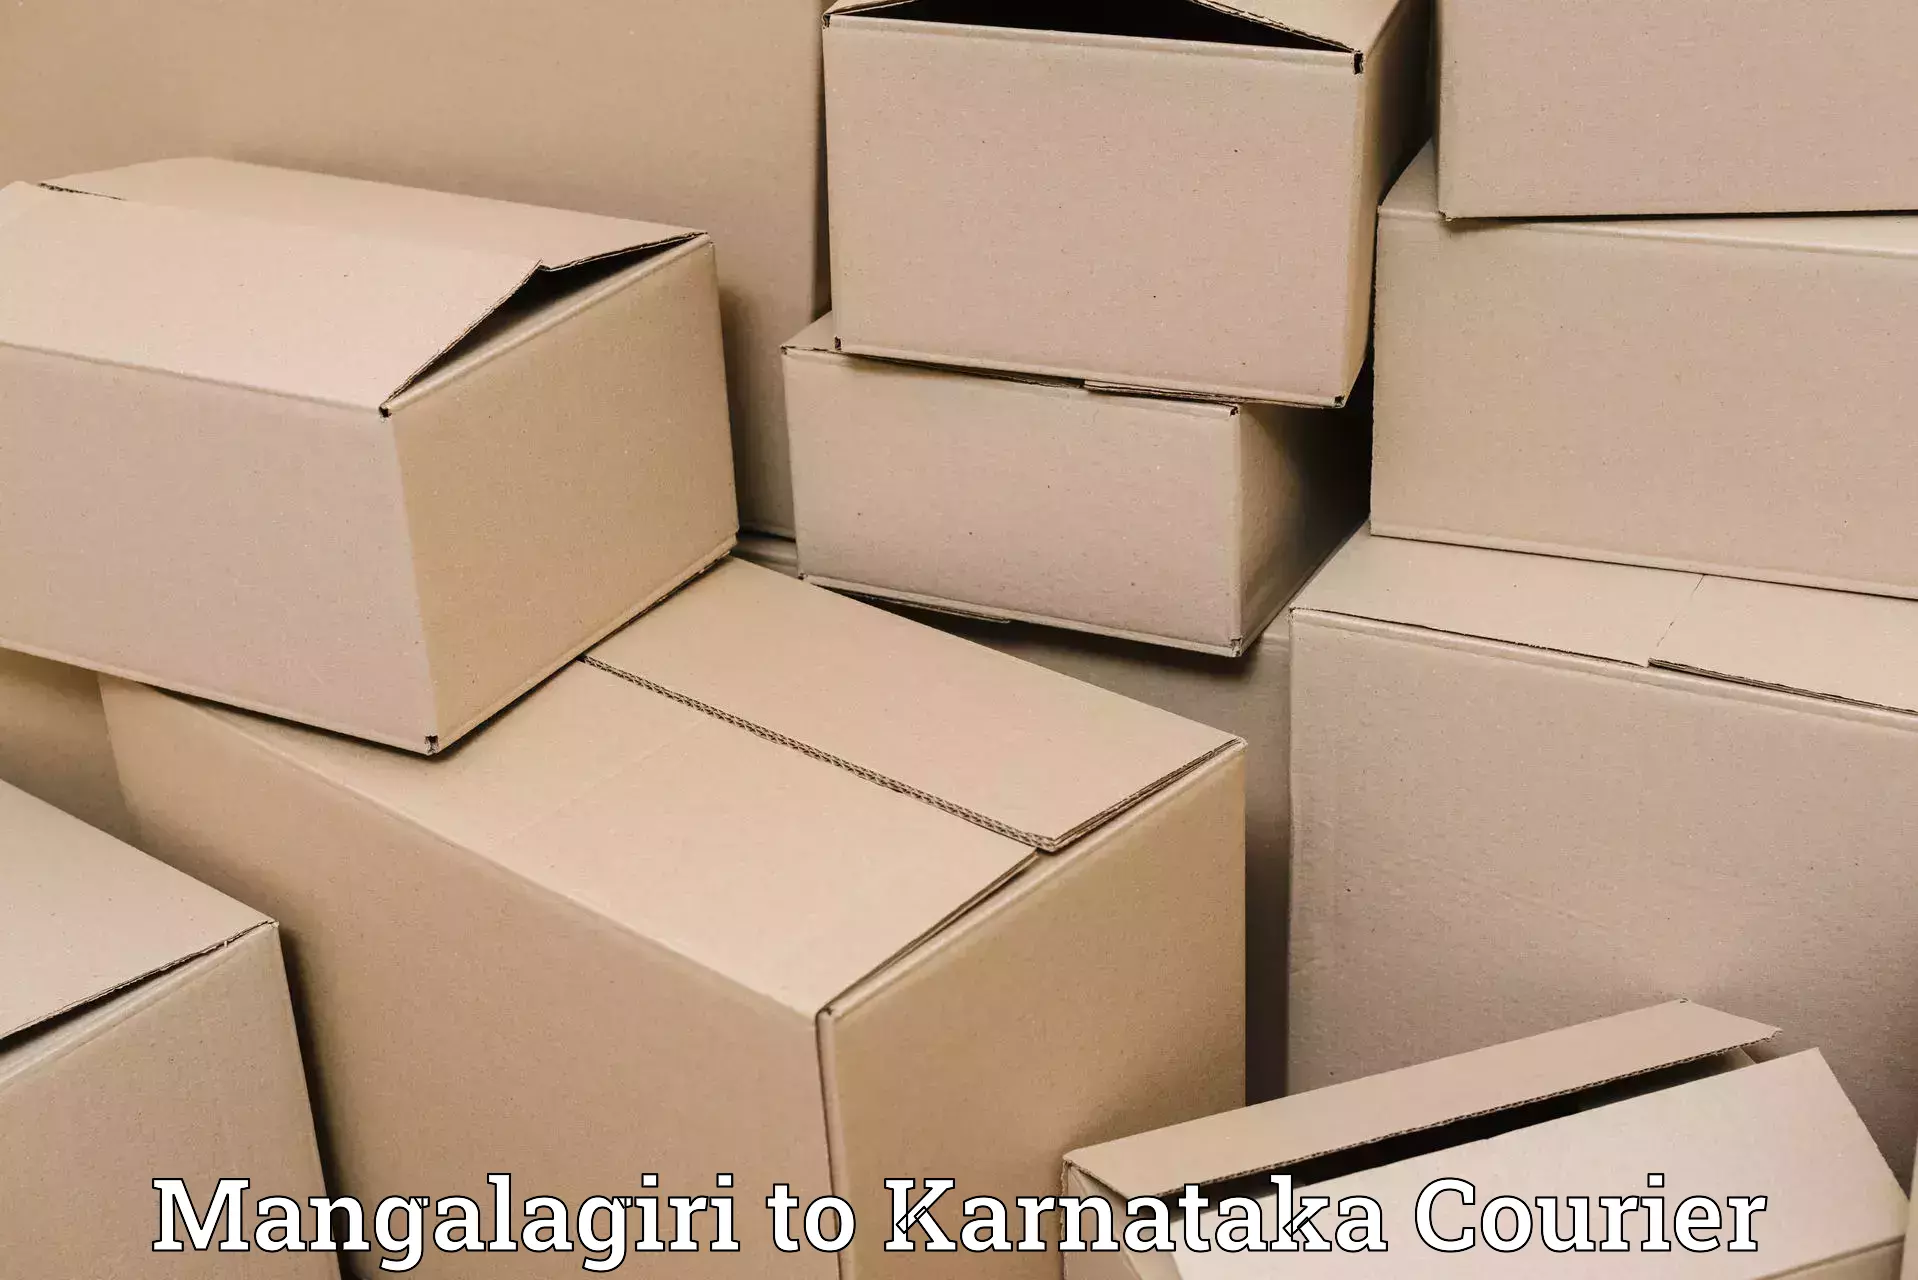 Nationwide parcel services Mangalagiri to Karnataka